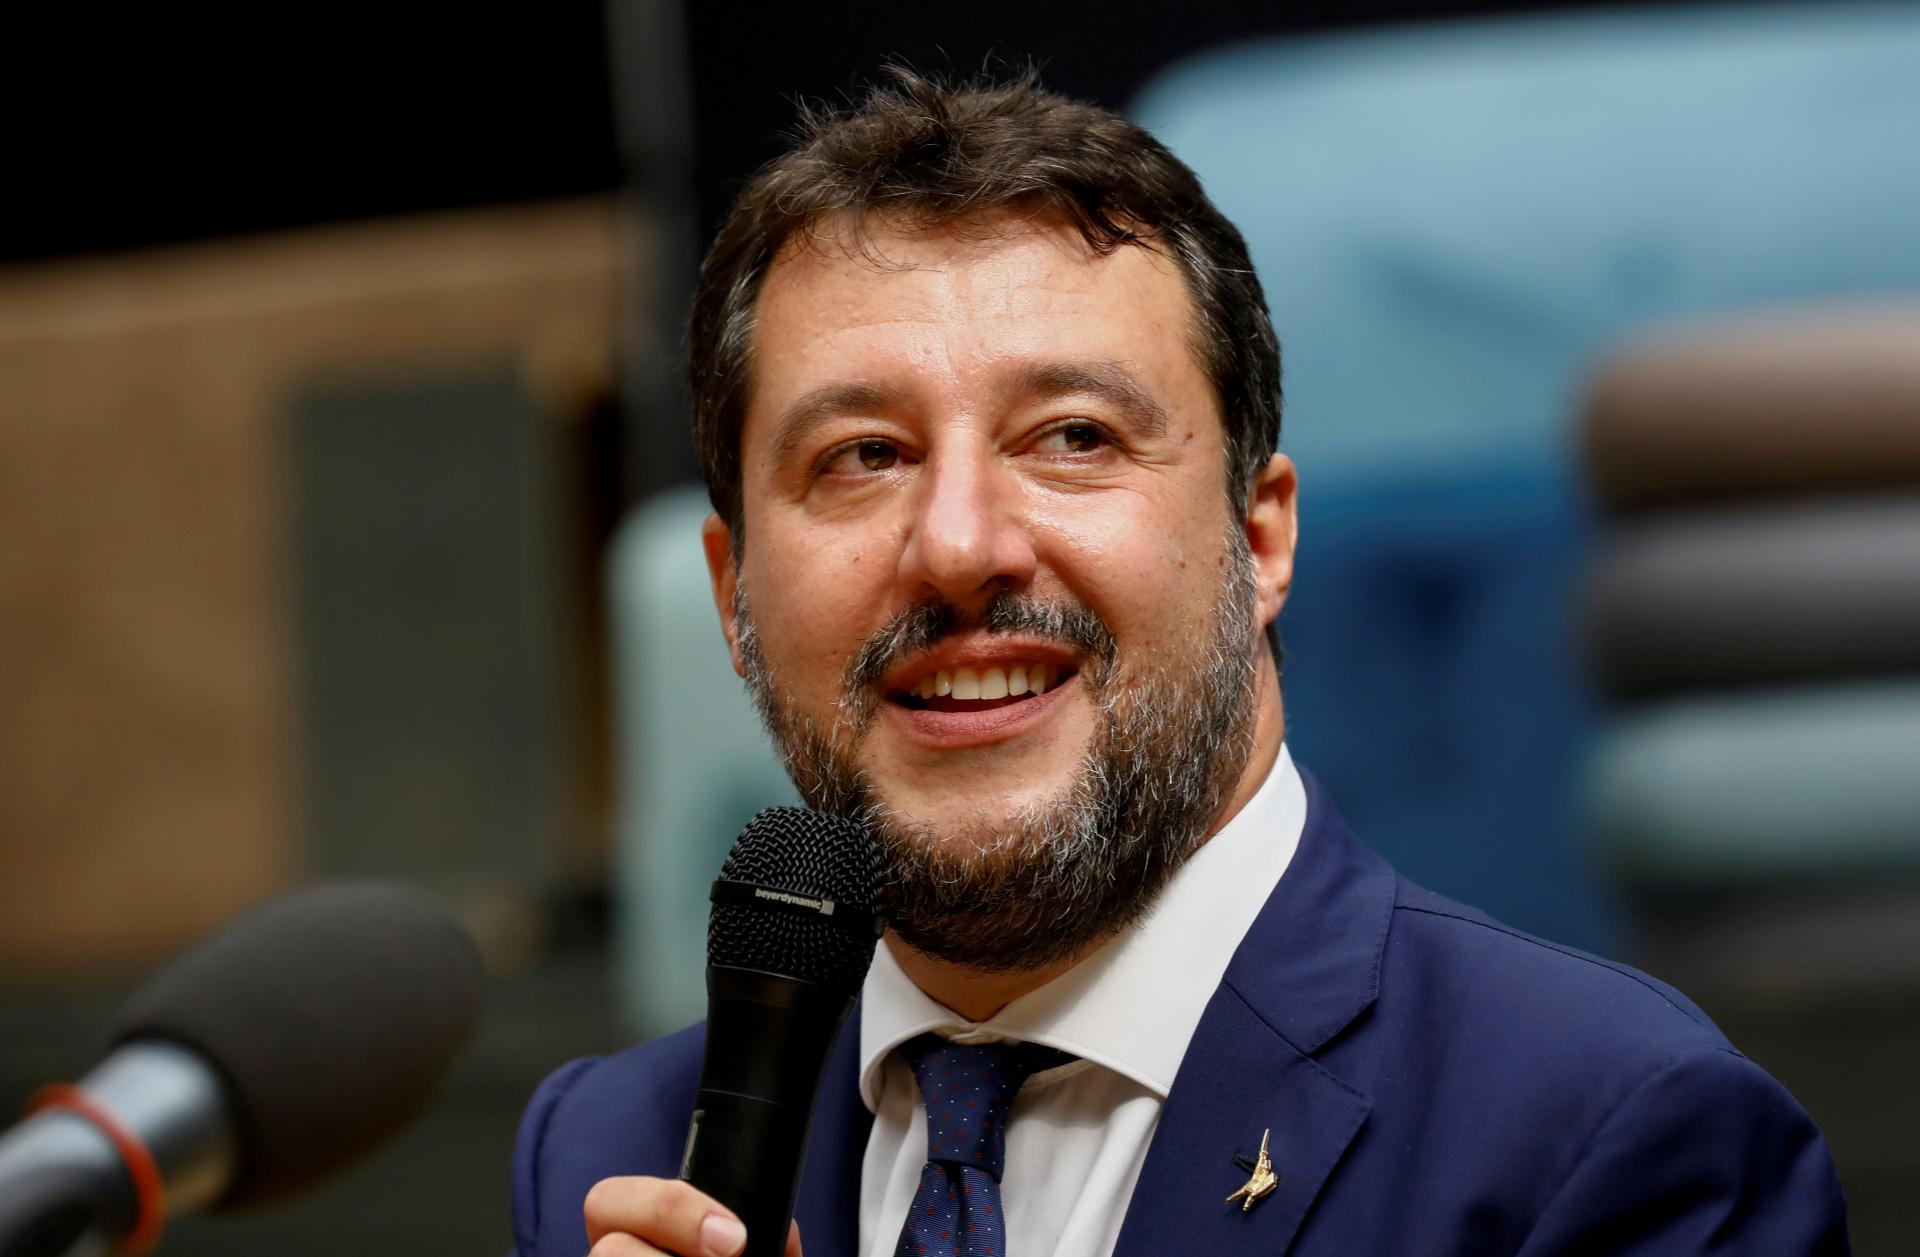 Taliansky minister žiada referendum o návrate k jadrovej energii